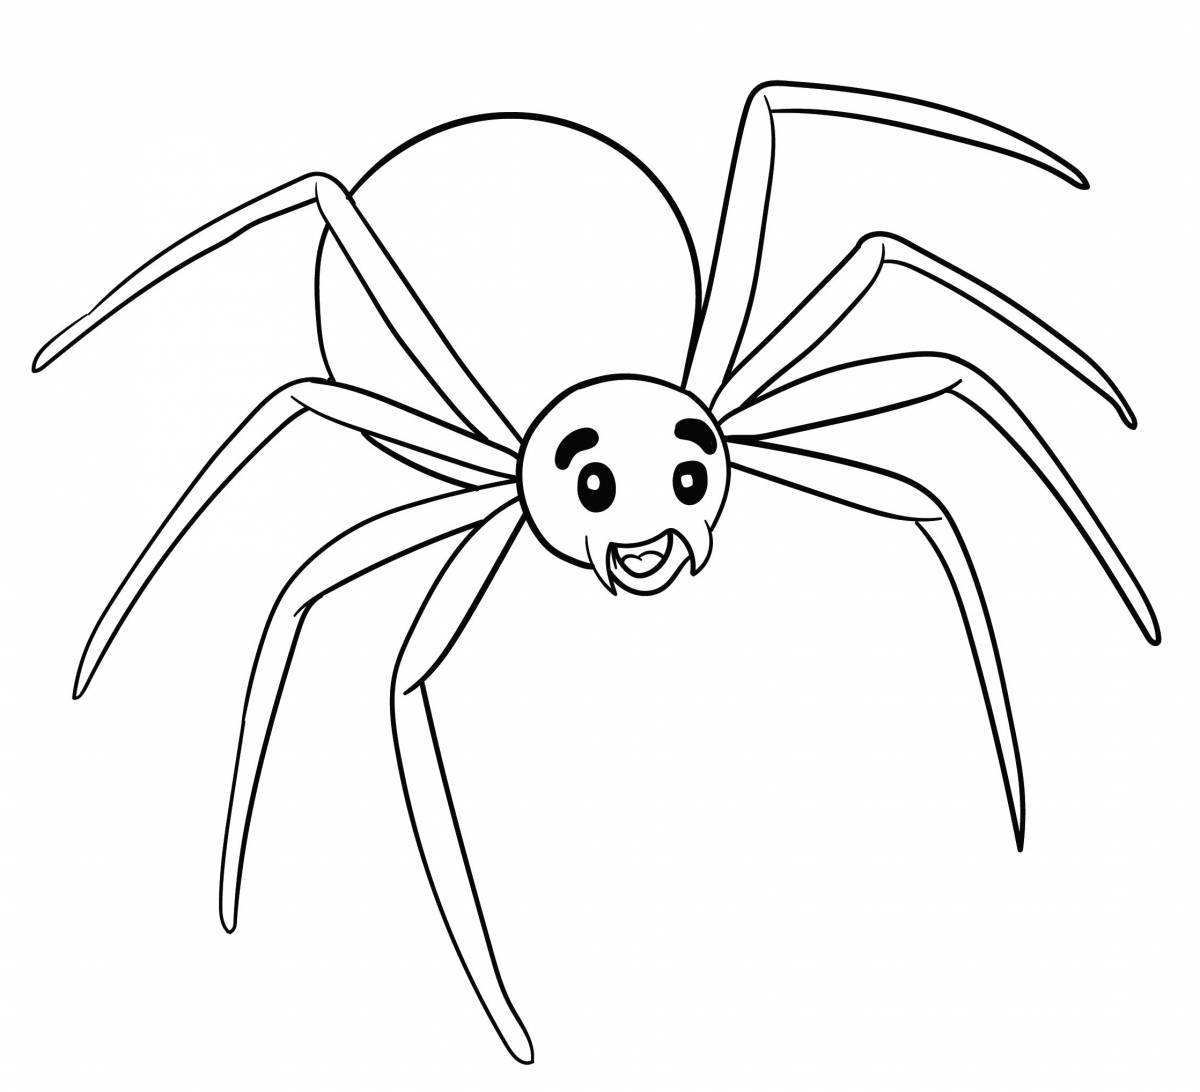 Веселый паук раскраски для детей